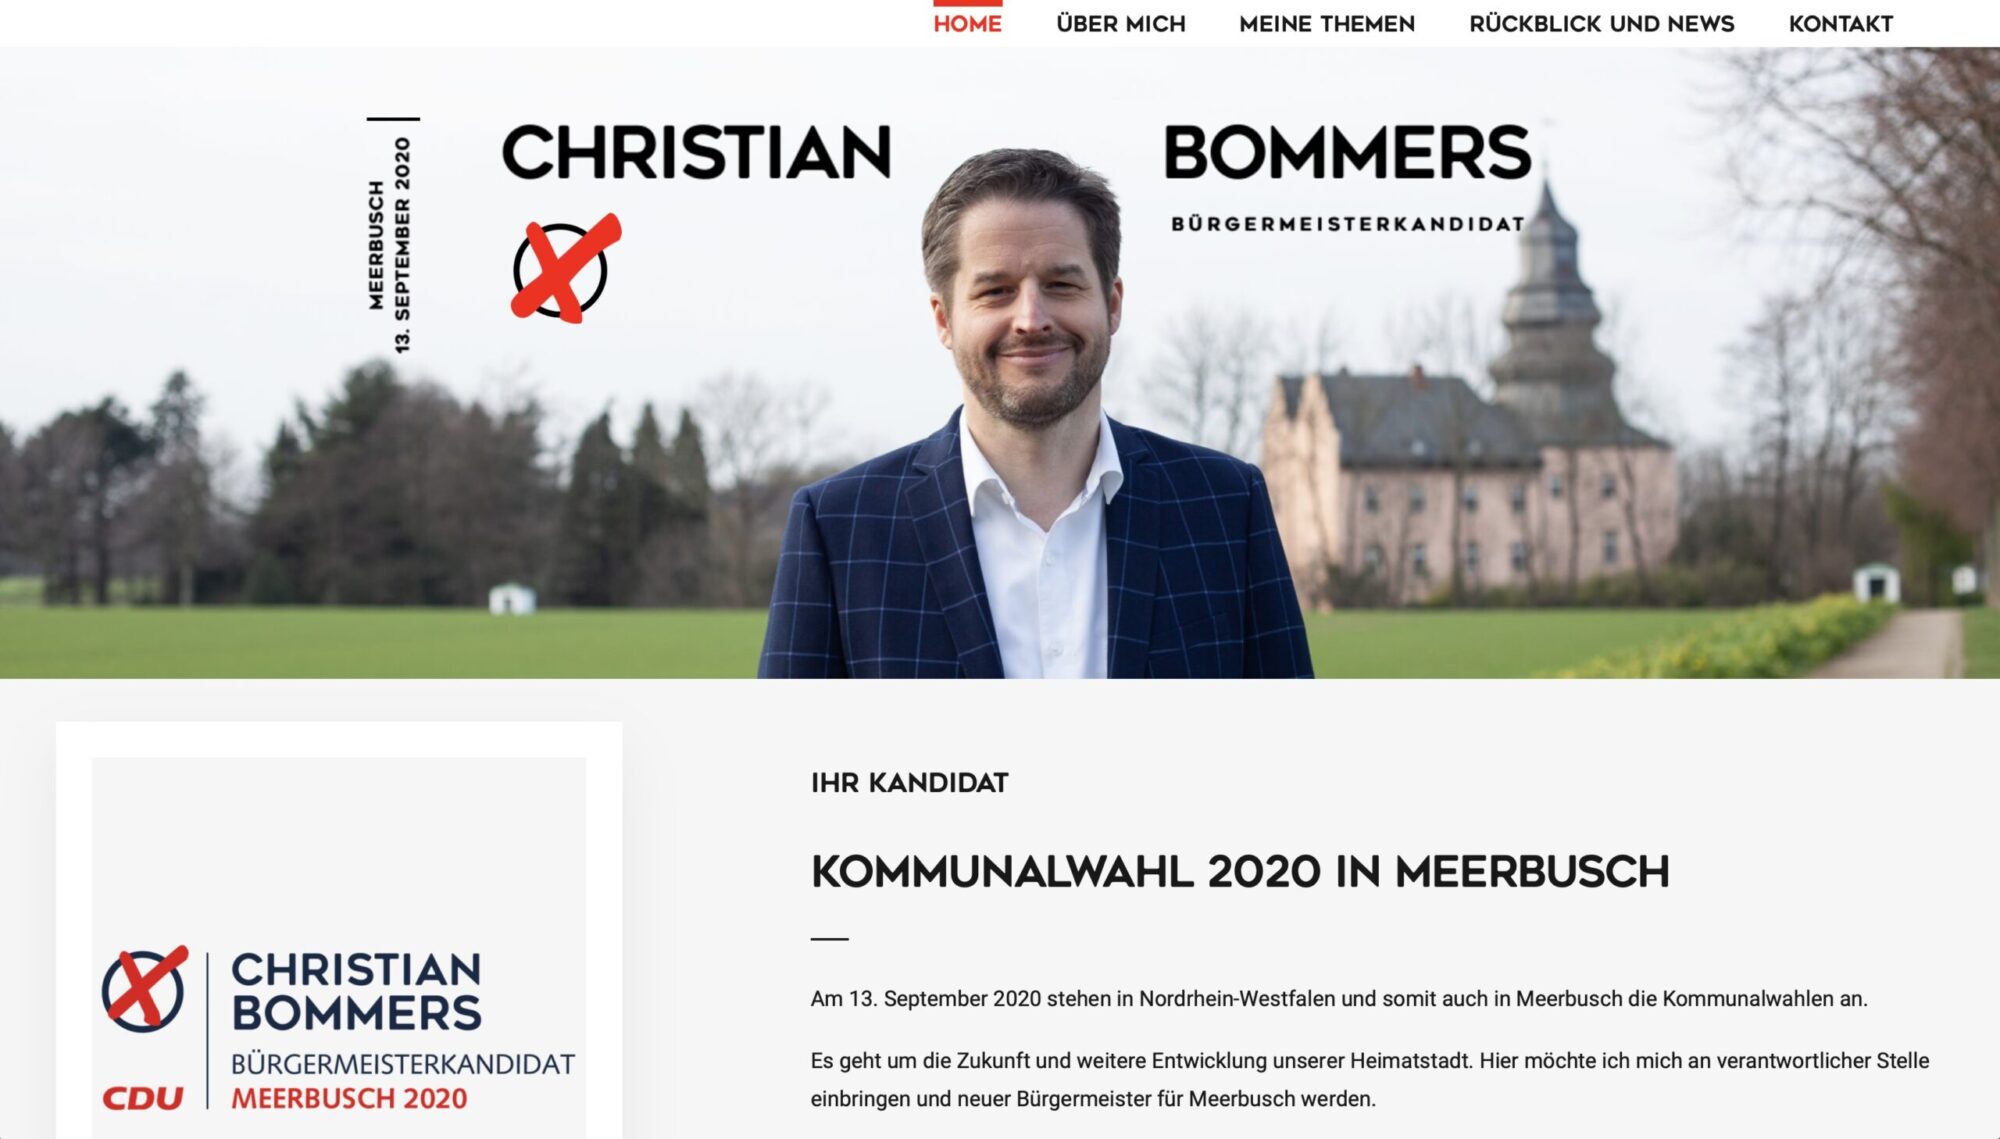 Christian Bommers, Bürgermeisterkandidat 2020, Meerbusch